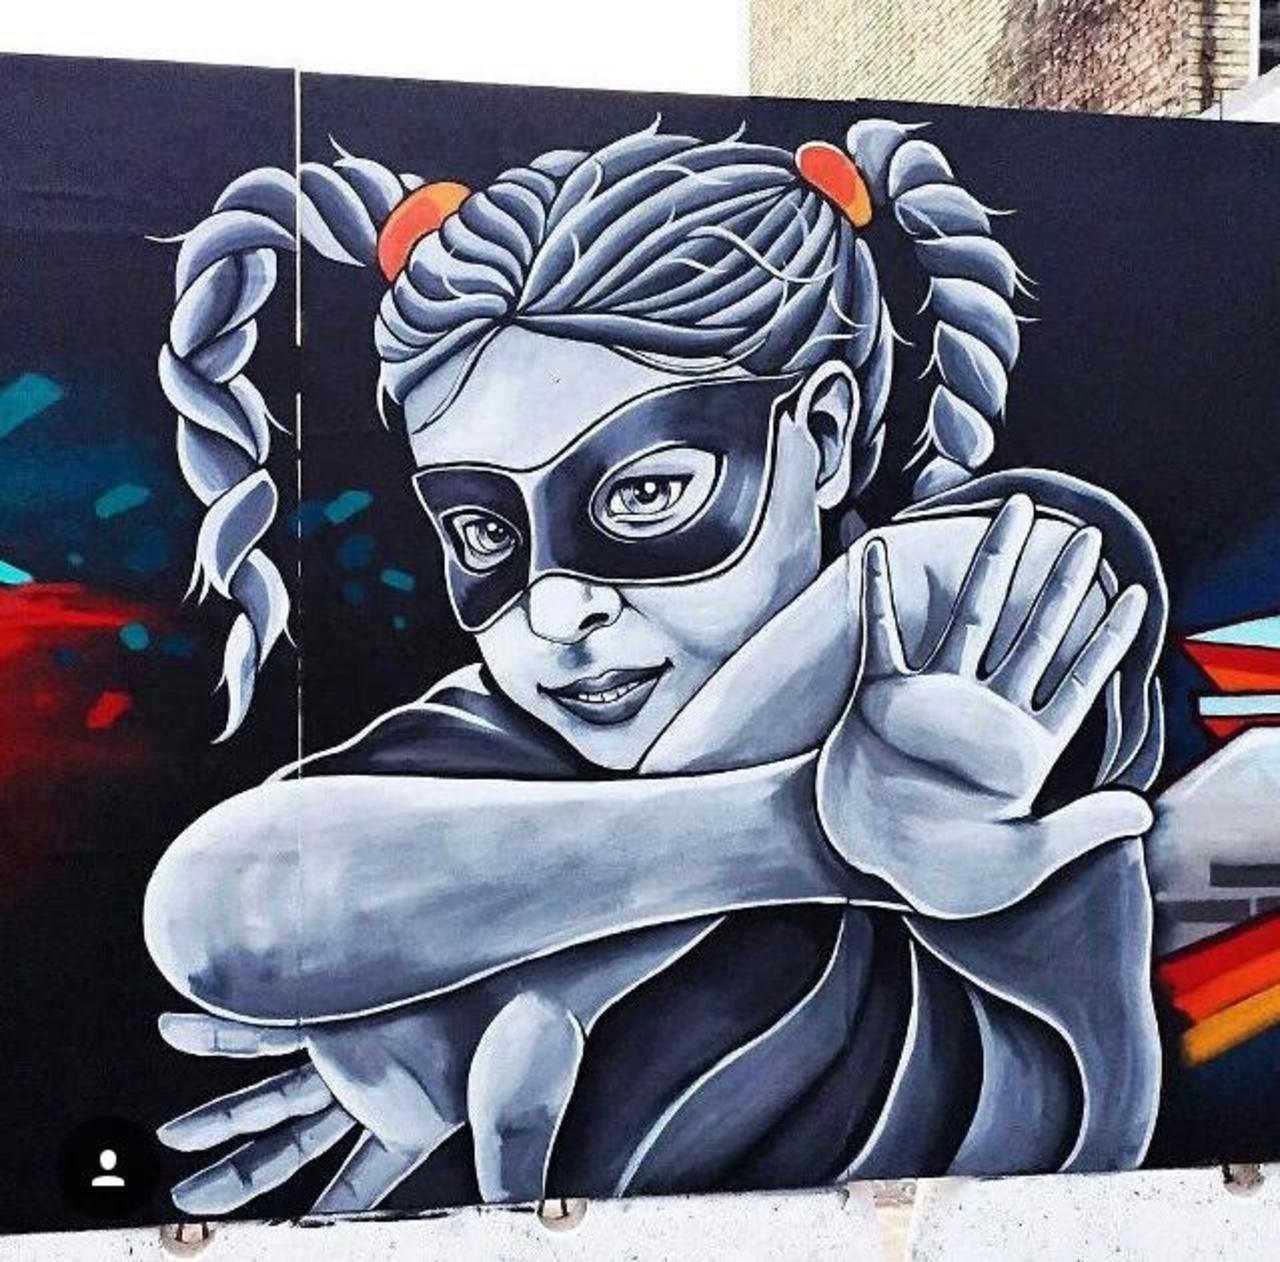 https://goo.gl/7kifqw Street Art by Stinehvid 

#art #graffiti #mural #streetart http://t.co/d6ZKsma5Z9 … https://goo.gl/7kifqw